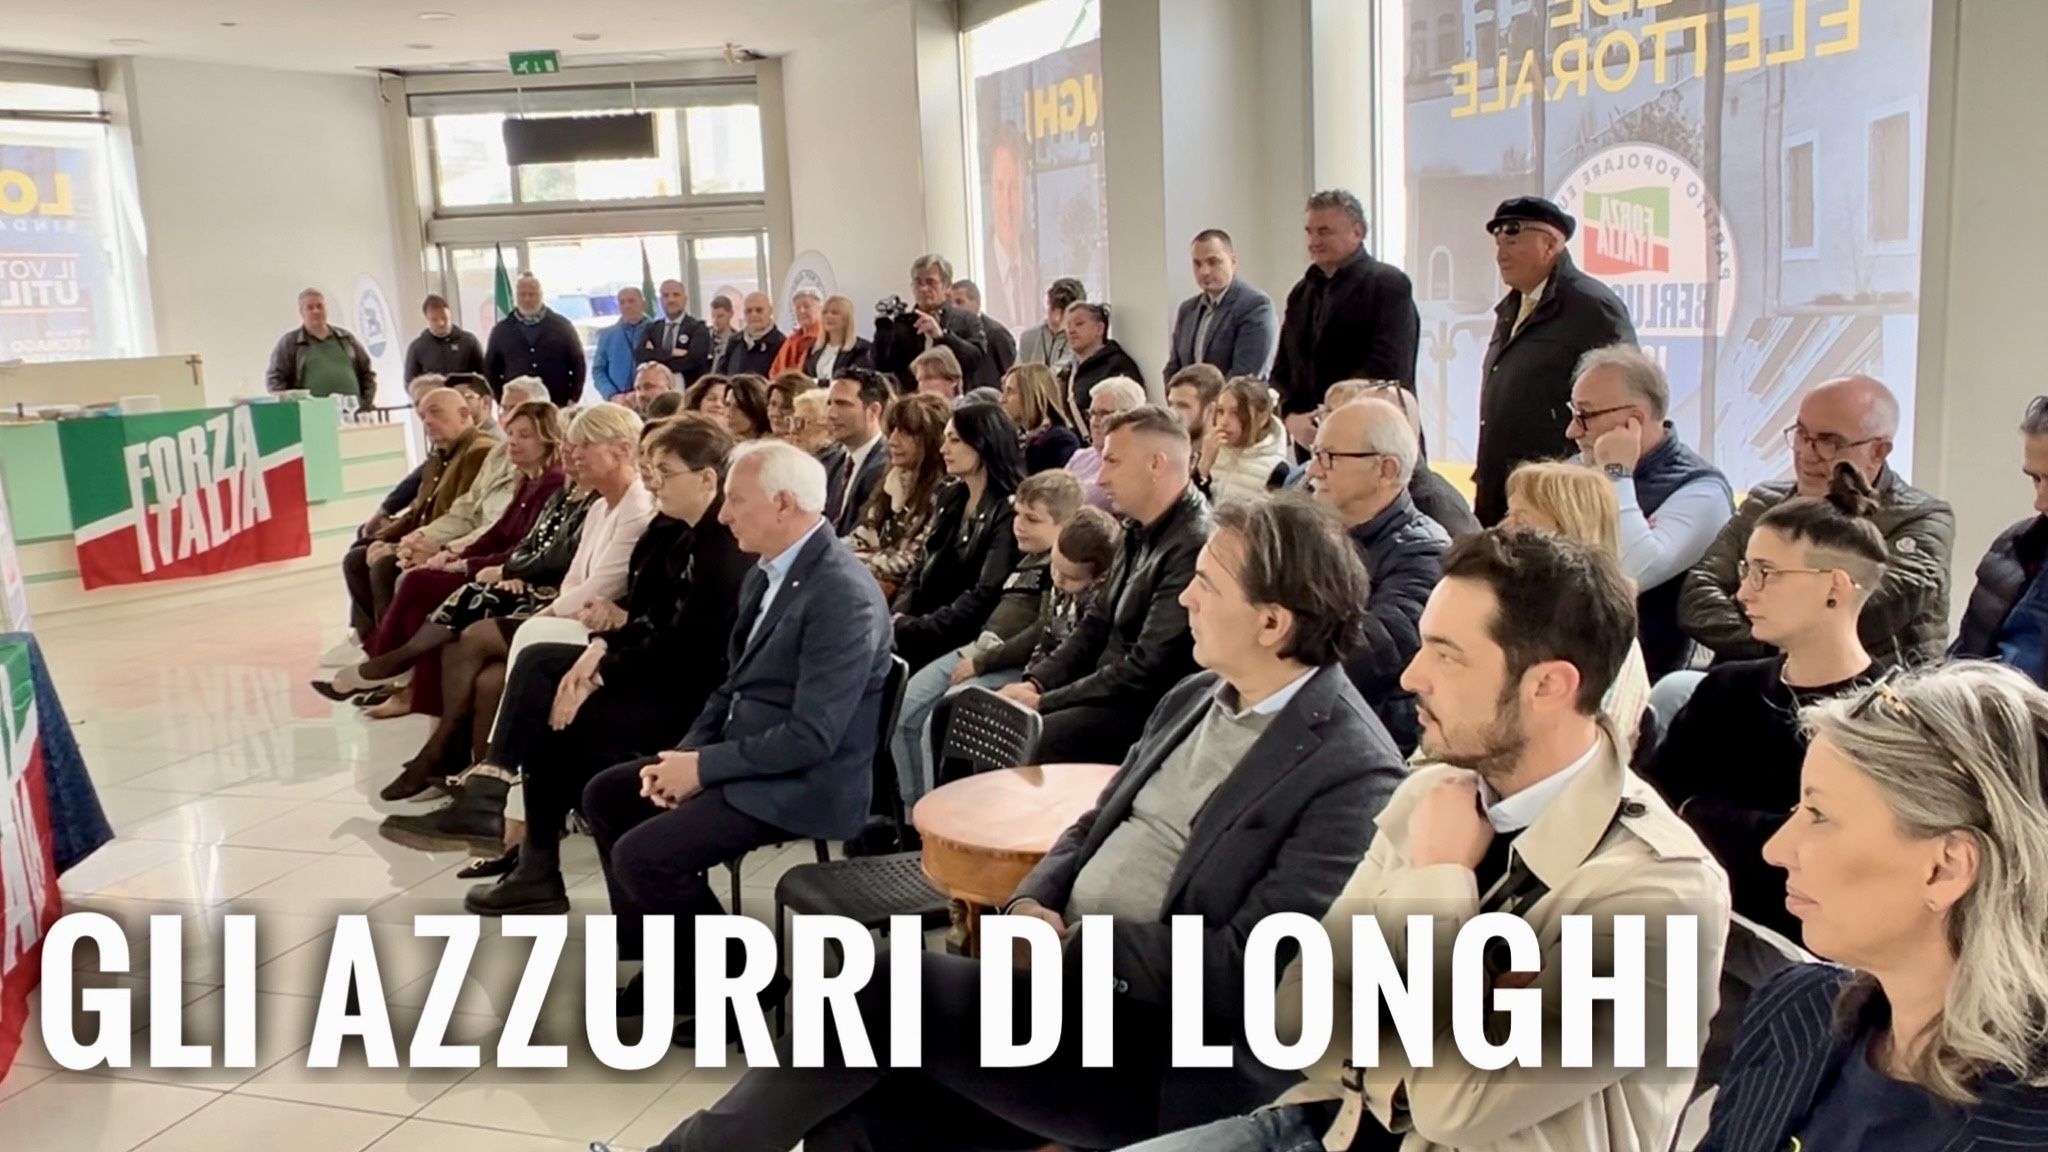 LEGNAGO VERSO LE ELEZIONI. [VIDEO] PRESENTATA LA LISTA DI FORZA ITALIA, LA PRIMA DELLE TRE LISTE CHE SOSTENGONO PAOLO LONGHI.